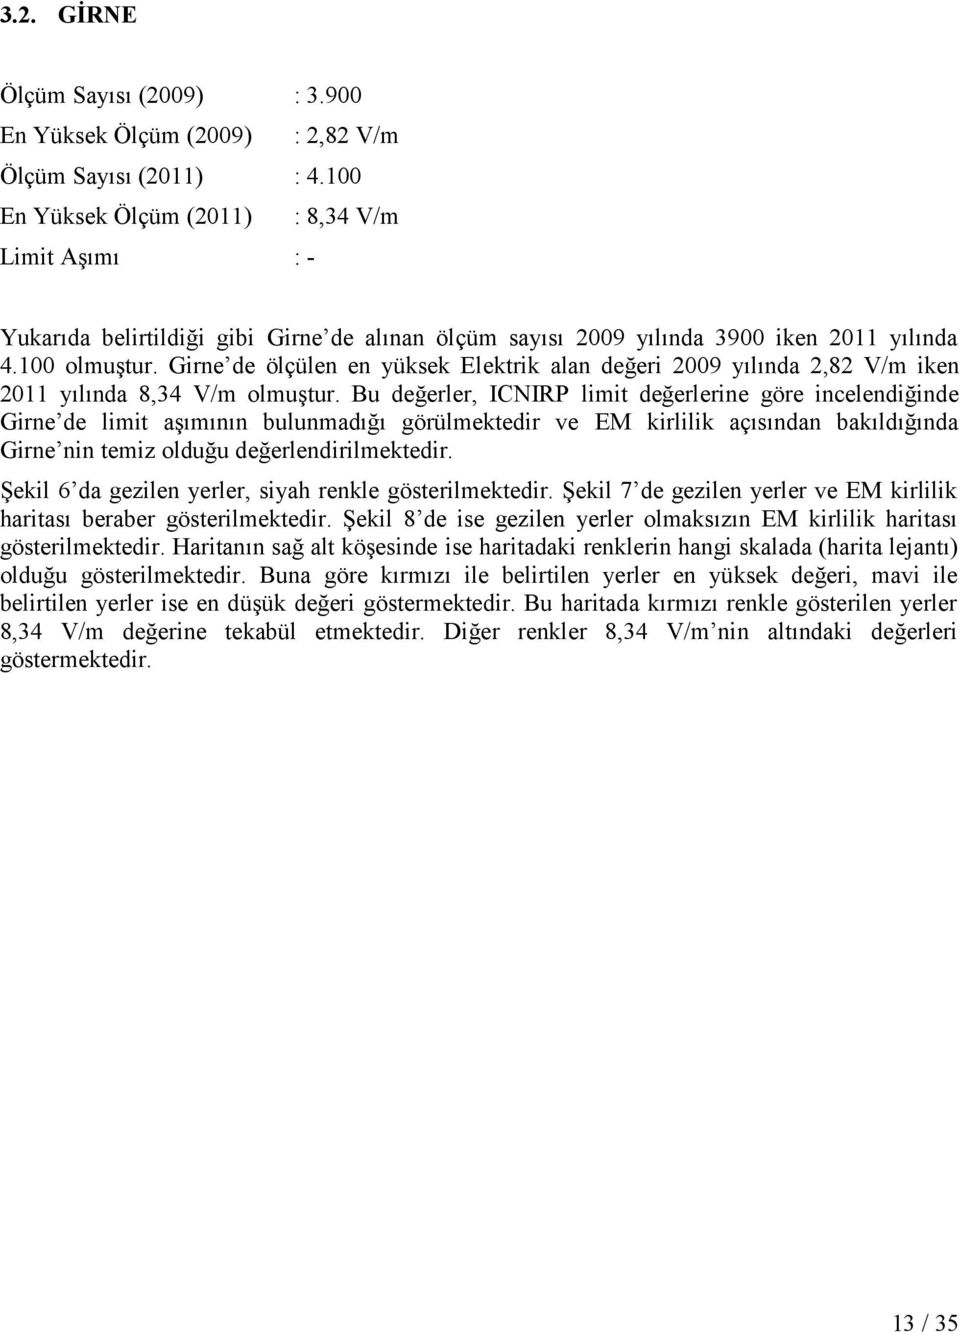 Girne de ölçülen en yüksek Elektrik alan değeri 2009 yılında 2,82 V/m iken 2011 yılında 8,34 V/m olmuştur.